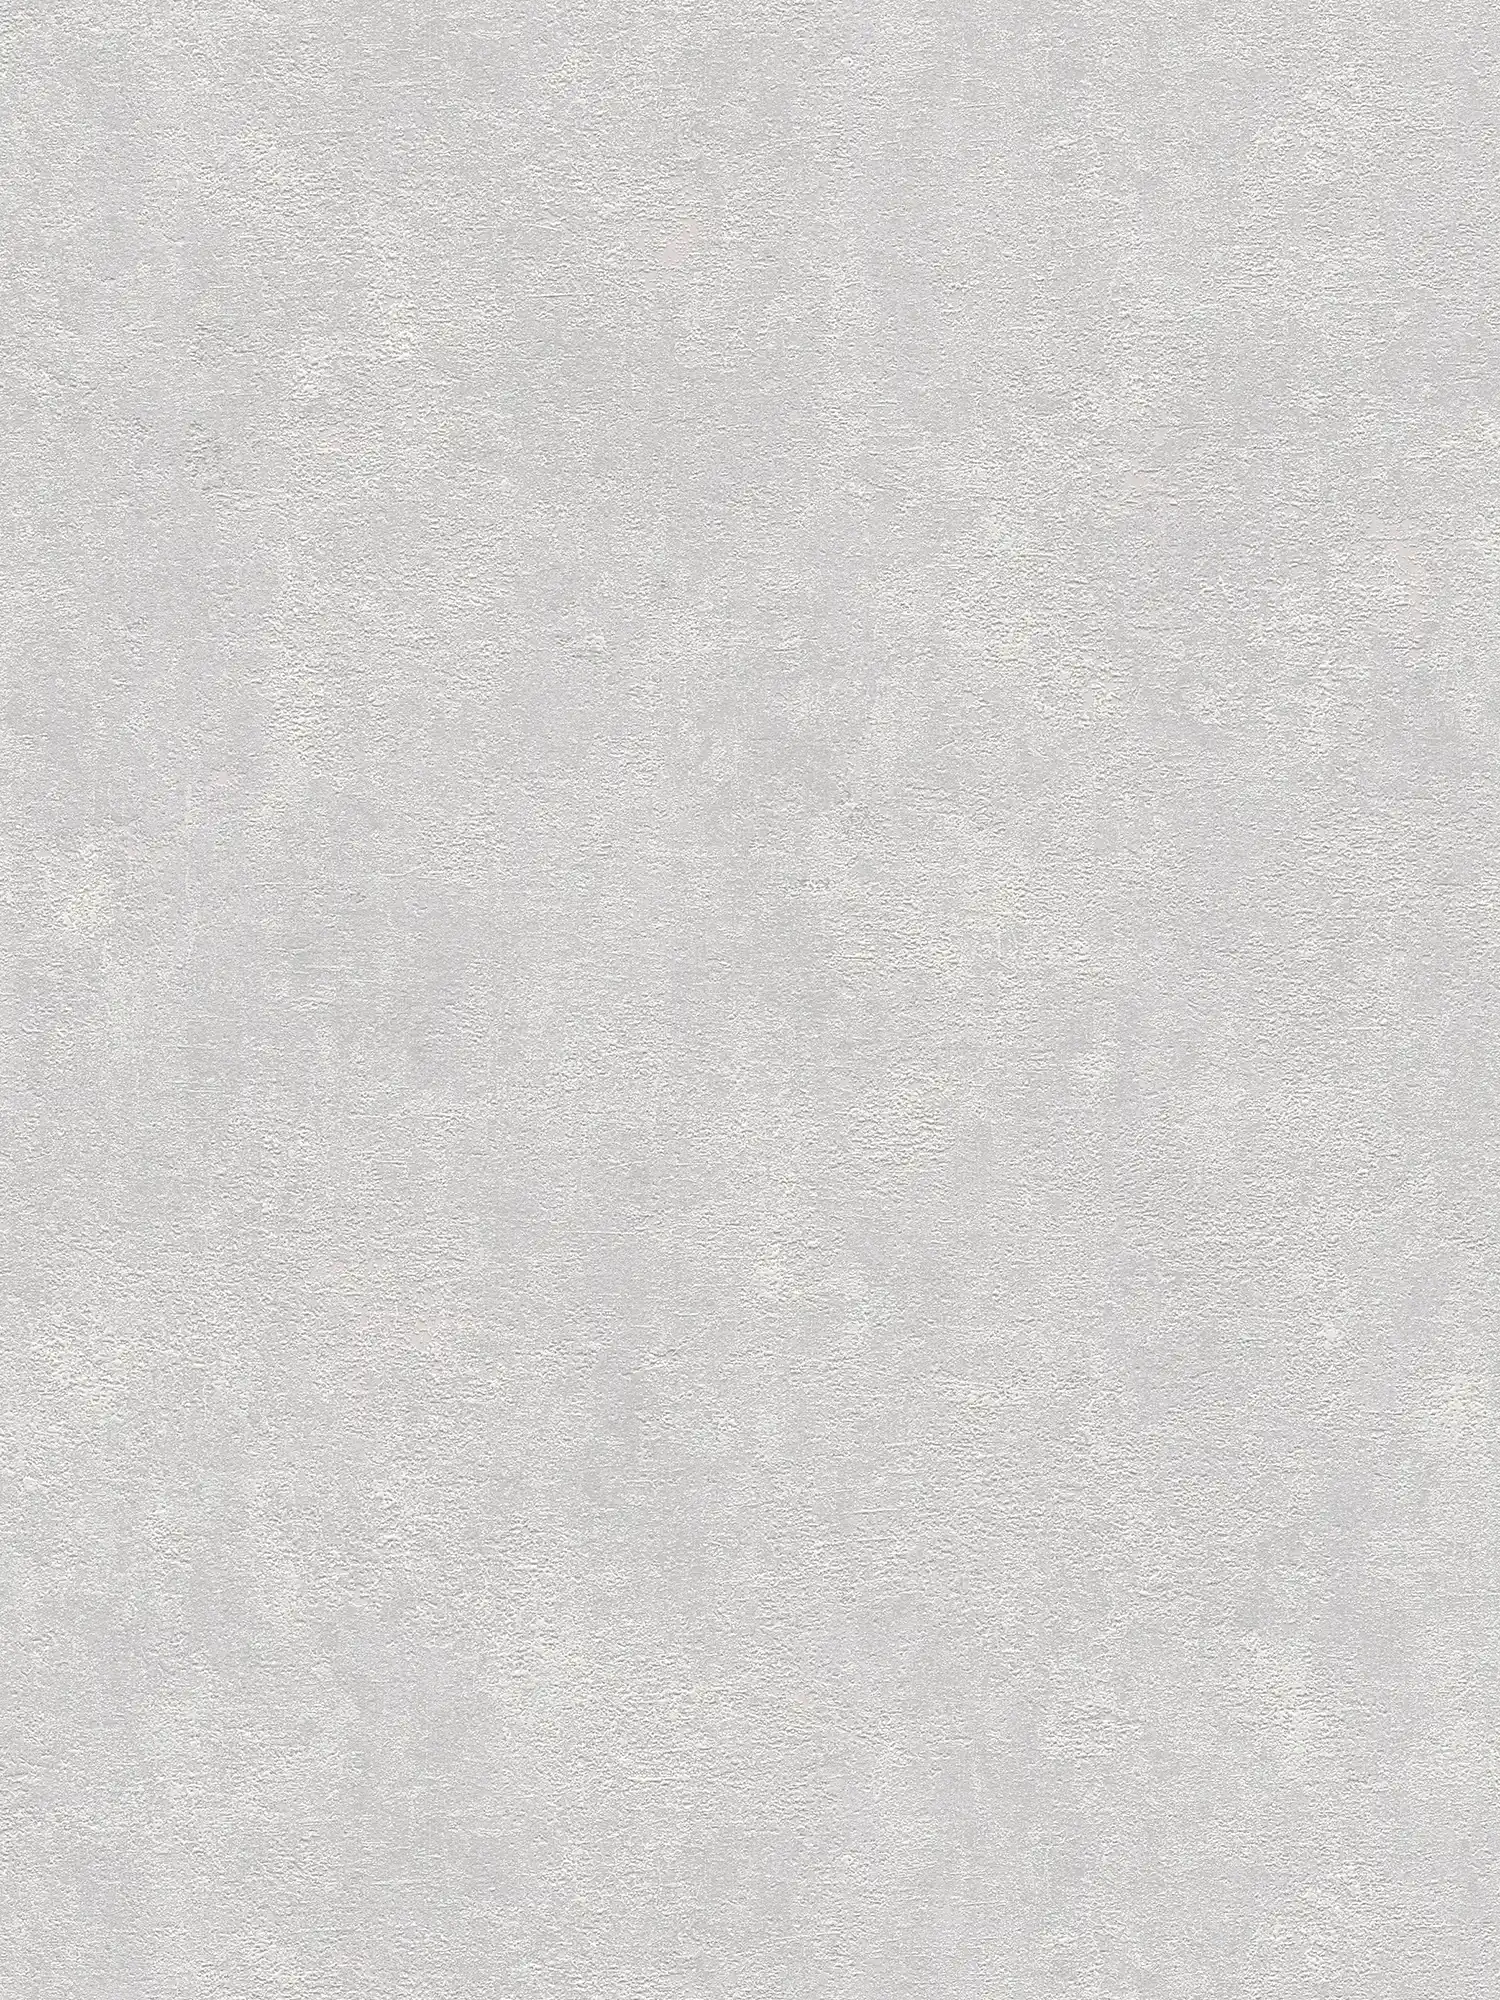 Carta da parati struttura in gesso, liscia e satinata - grigio chiaro
